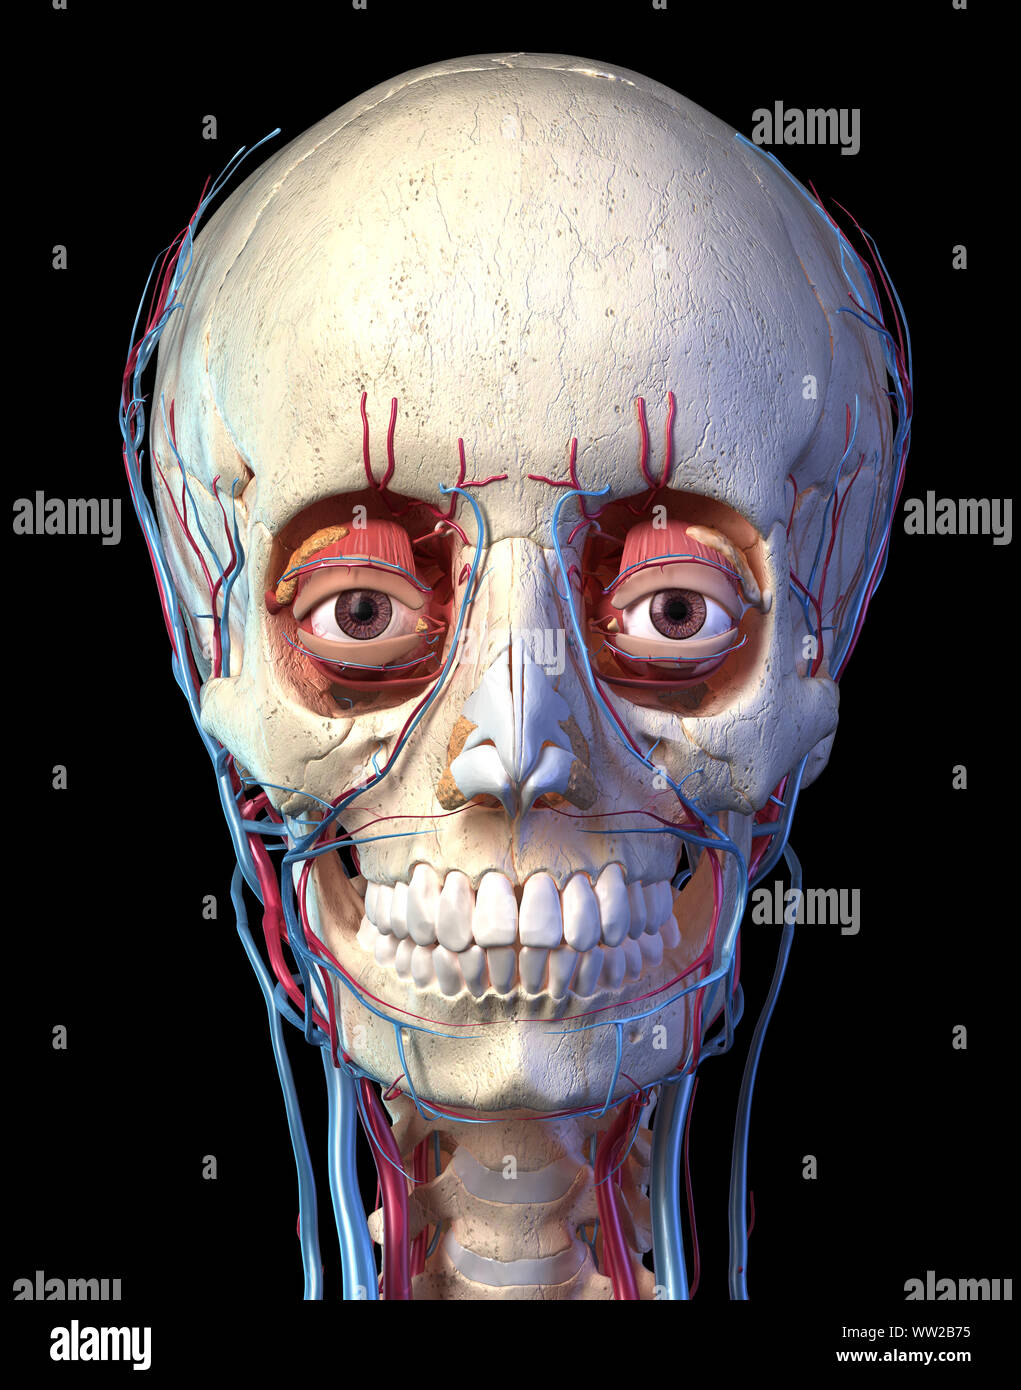 Der menschlichen Anatomie, Gefäßsystem der Kopf gesehen von der Vorderseite. Computer 3D Rendering Artwork. Auf schwarzem Hintergrund. Stockfoto